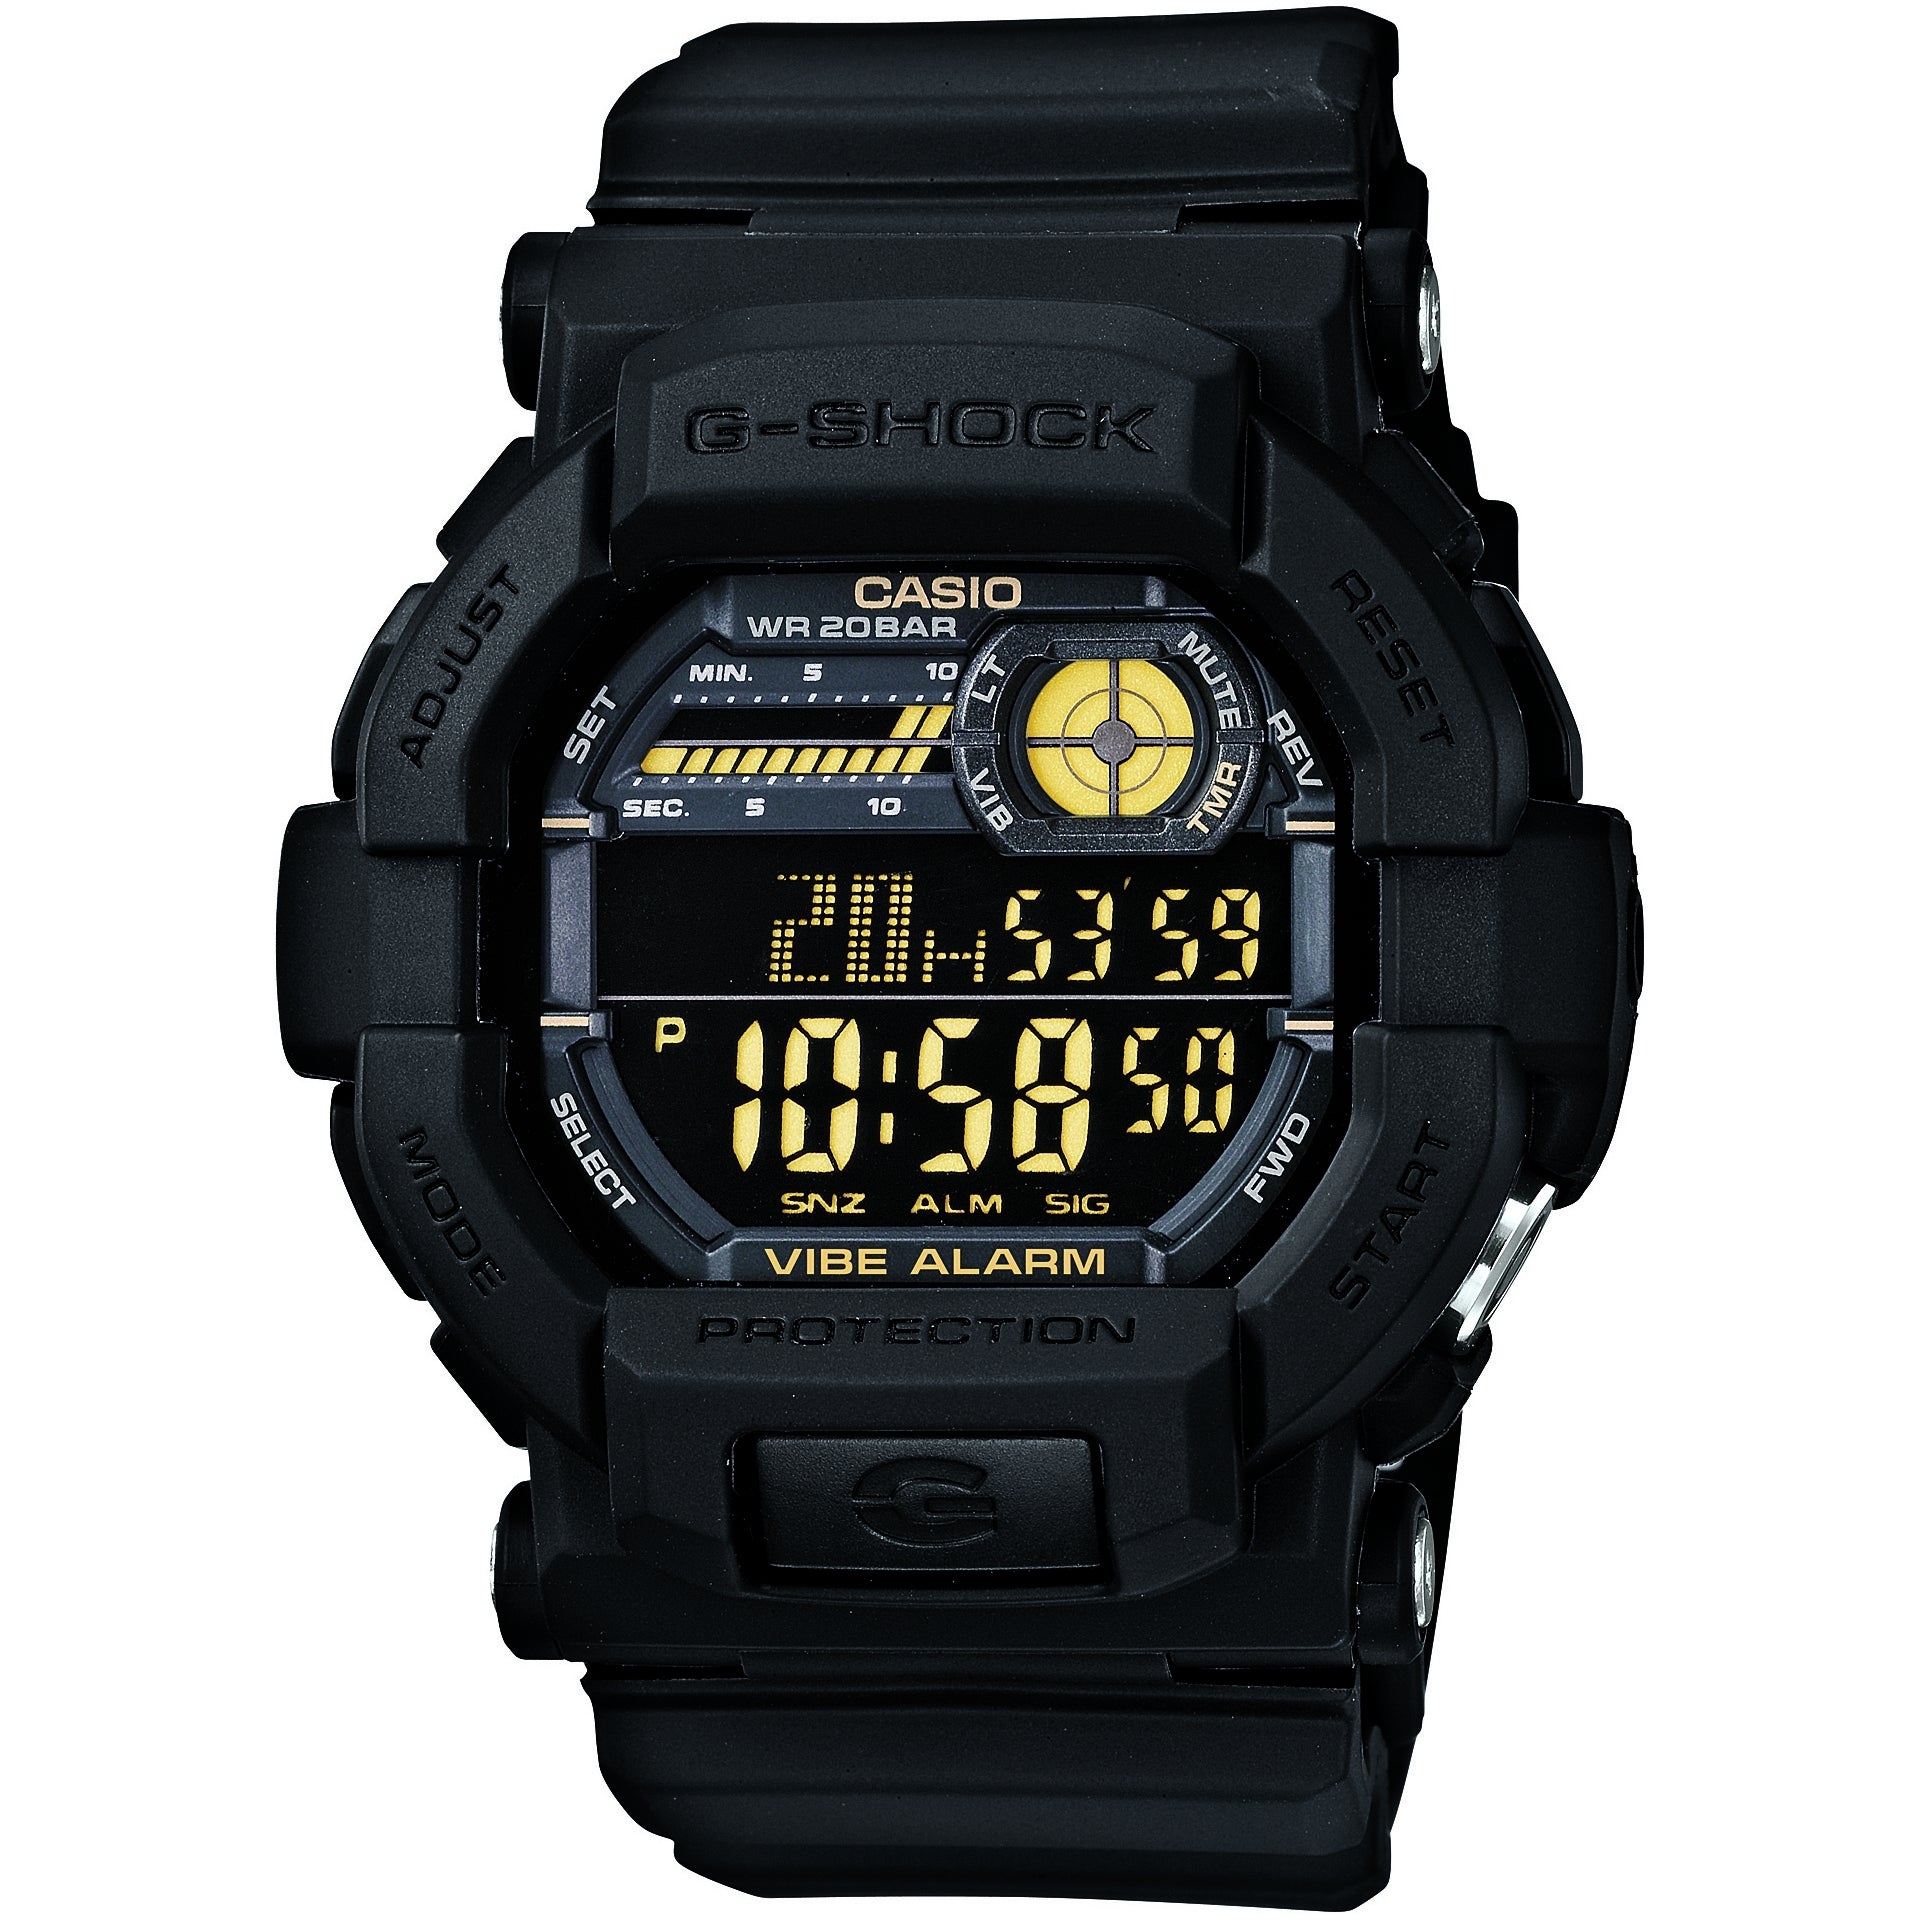 Infecteren Op maat Kamer Casio G-Shock GD-350-1BER Vibrating 5 Alarm Black Yellow Men's Watch –  mzwatcheslk